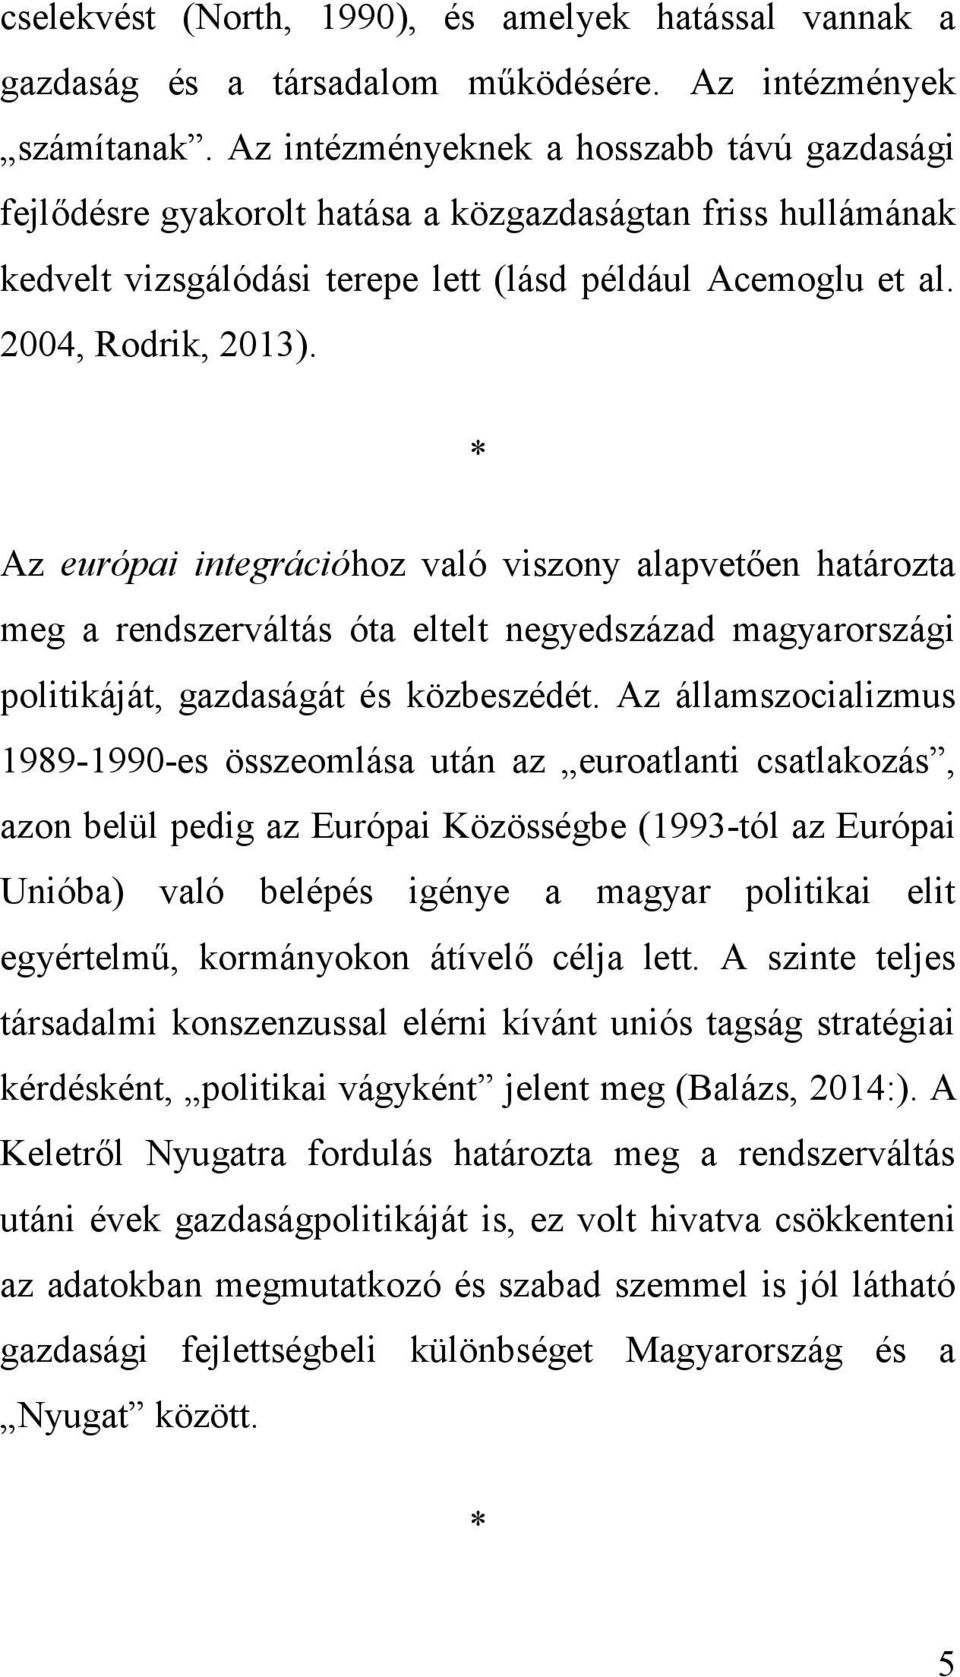 * Az európai integrációhoz való viszony alapvetően határozta meg a rendszerváltás óta eltelt negyedszázad magyarországi politikáját, gazdaságát és közbeszédét.